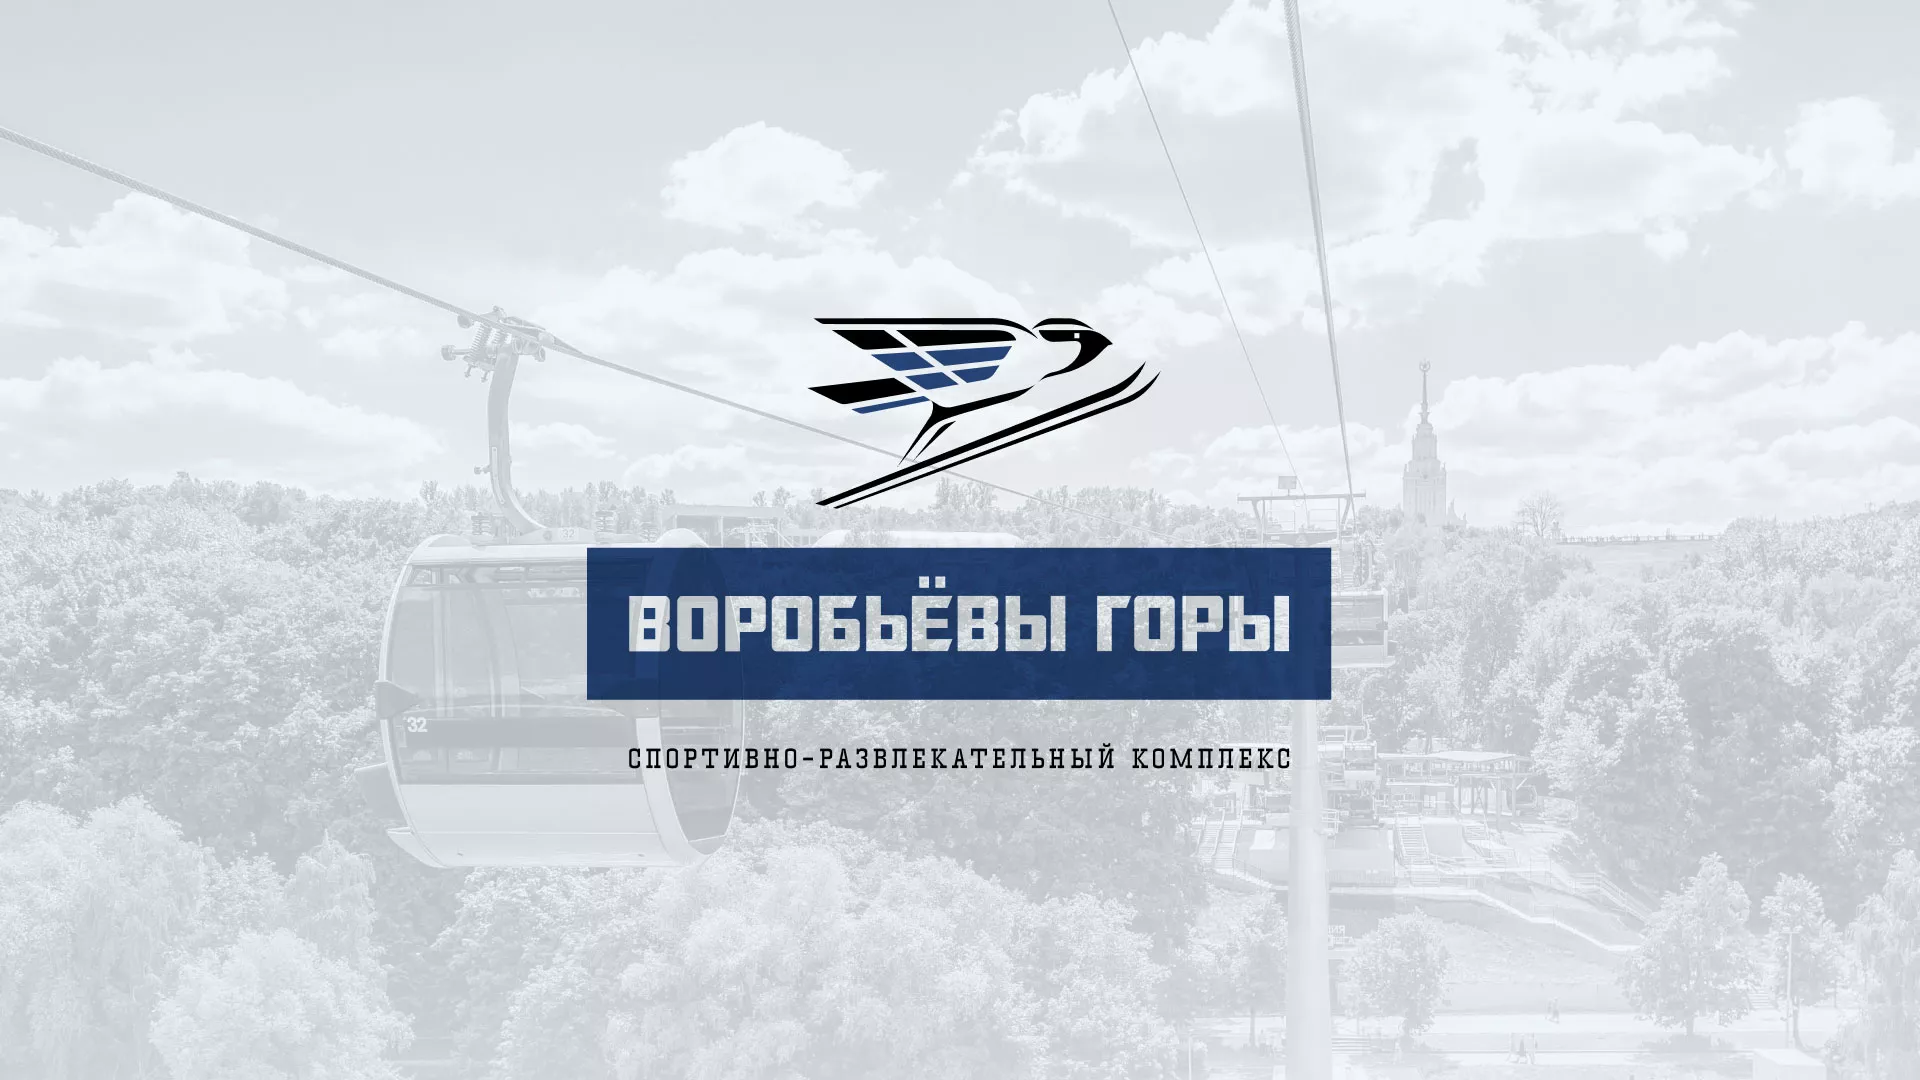 Разработка сайта в Сорочинске для спортивно-развлекательного комплекса «Воробьёвы горы»